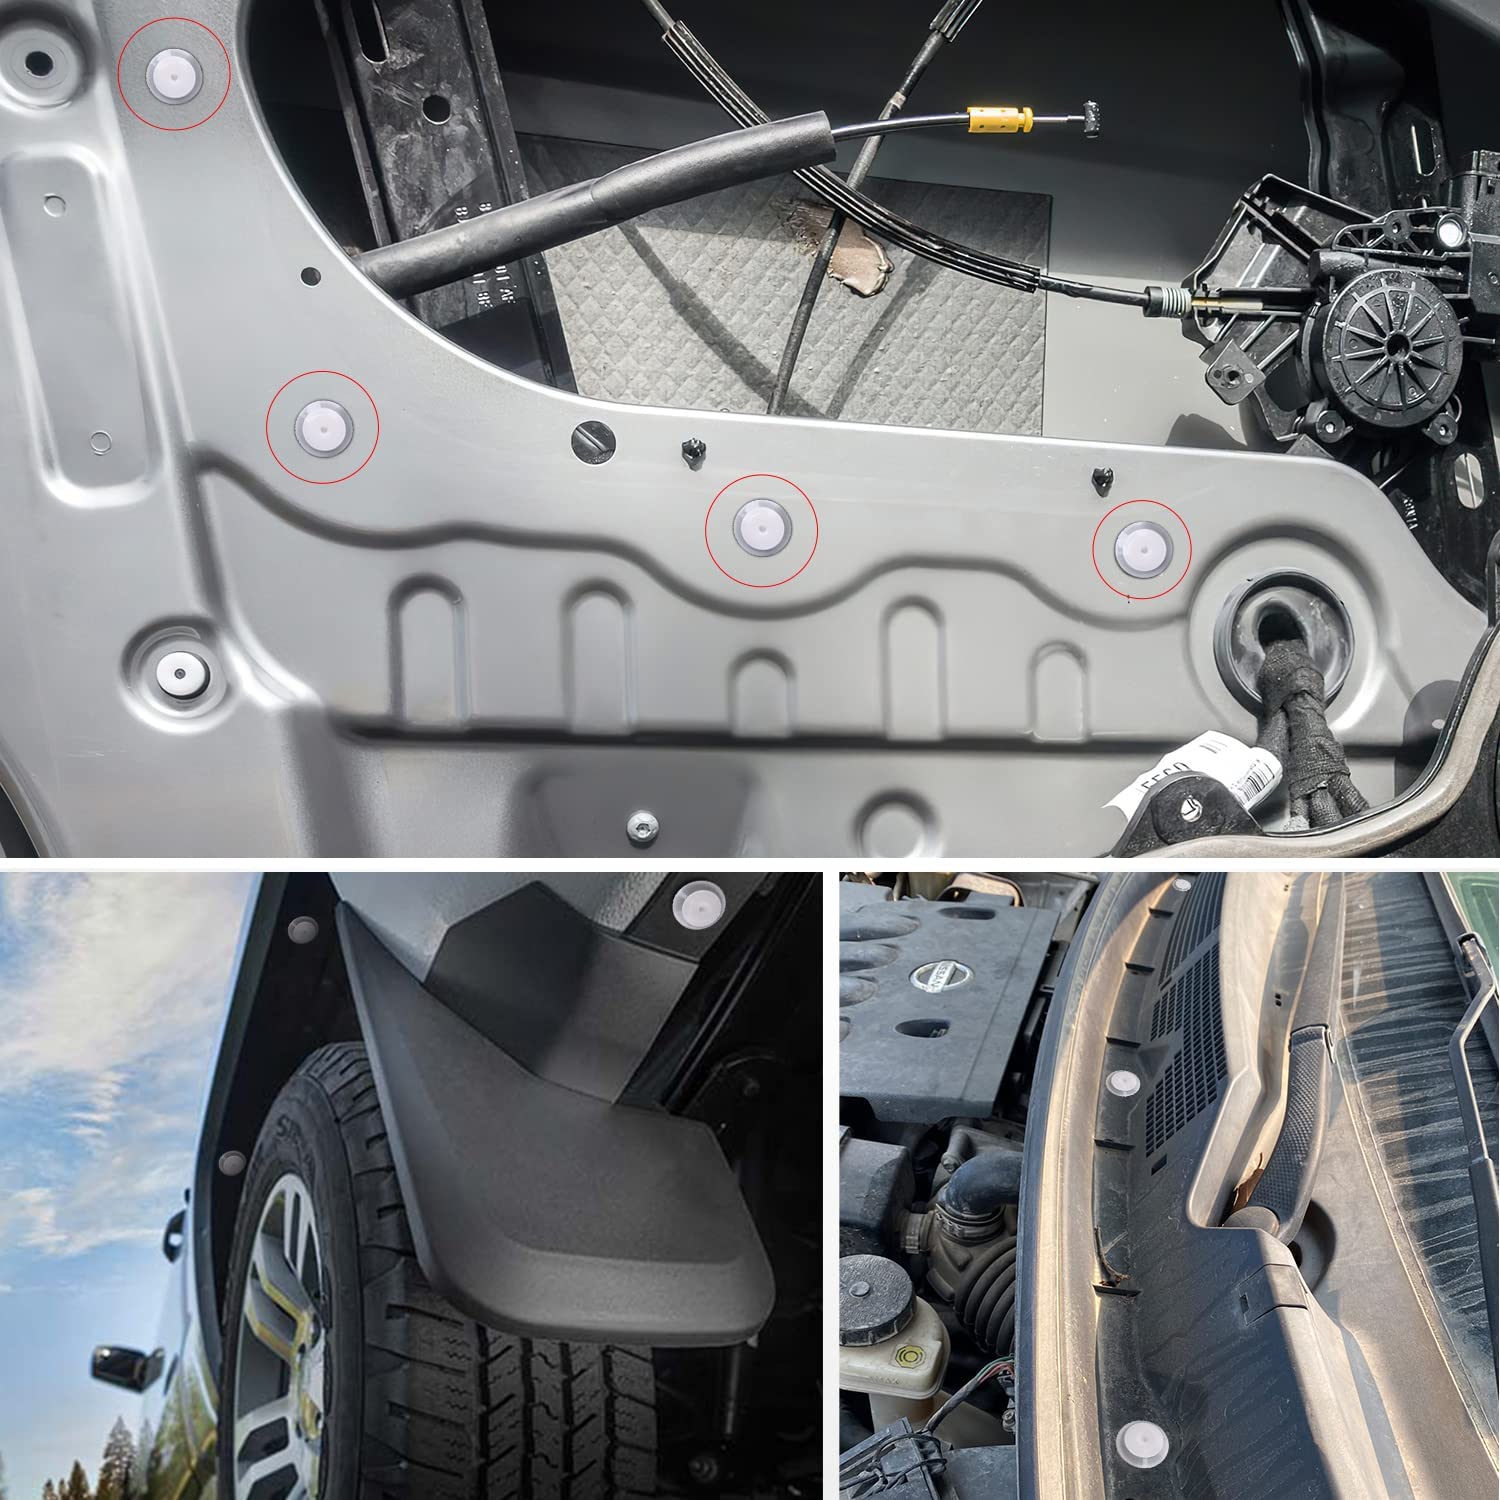 50 Pcs Car Door Trim Panel Retainer Clips Bumper Fastener Rivet Clips for Mazda G18K-51-SJ3 G18K51SJ3 Mazda 2, 3, 5, 6, CX-7, CX-9, MPV, MX-5 Miata, Protege RX-8 with Seal Ring